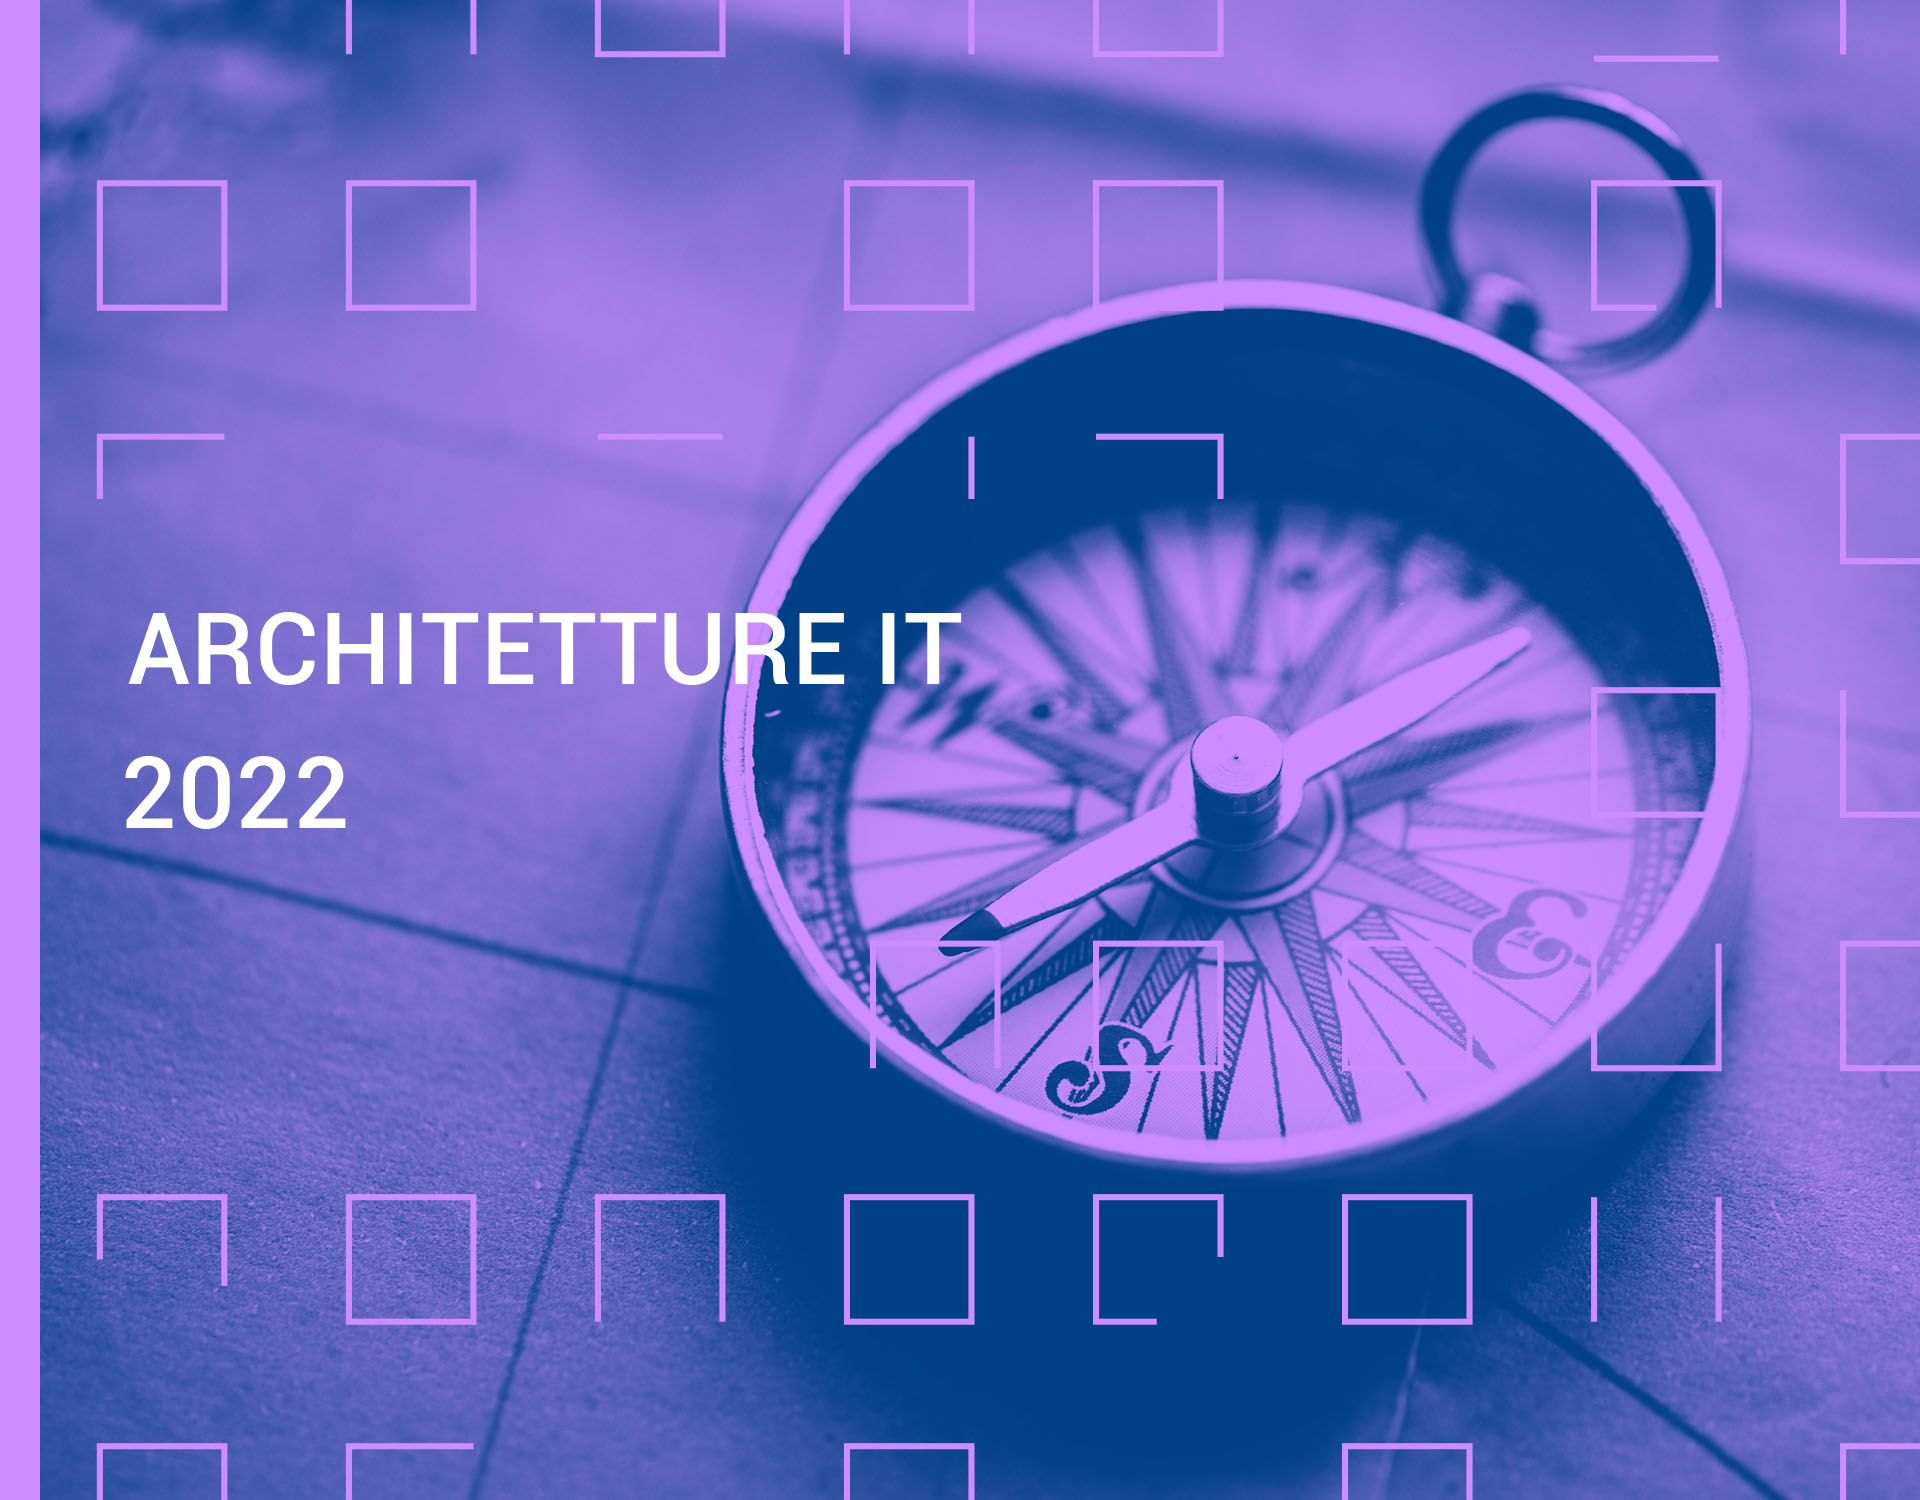 Rapporto Architetture IT in banca 2022 - L’evoluzione del pensiero strategico nel contesto di trasformazione digitale – una mappa per la banca